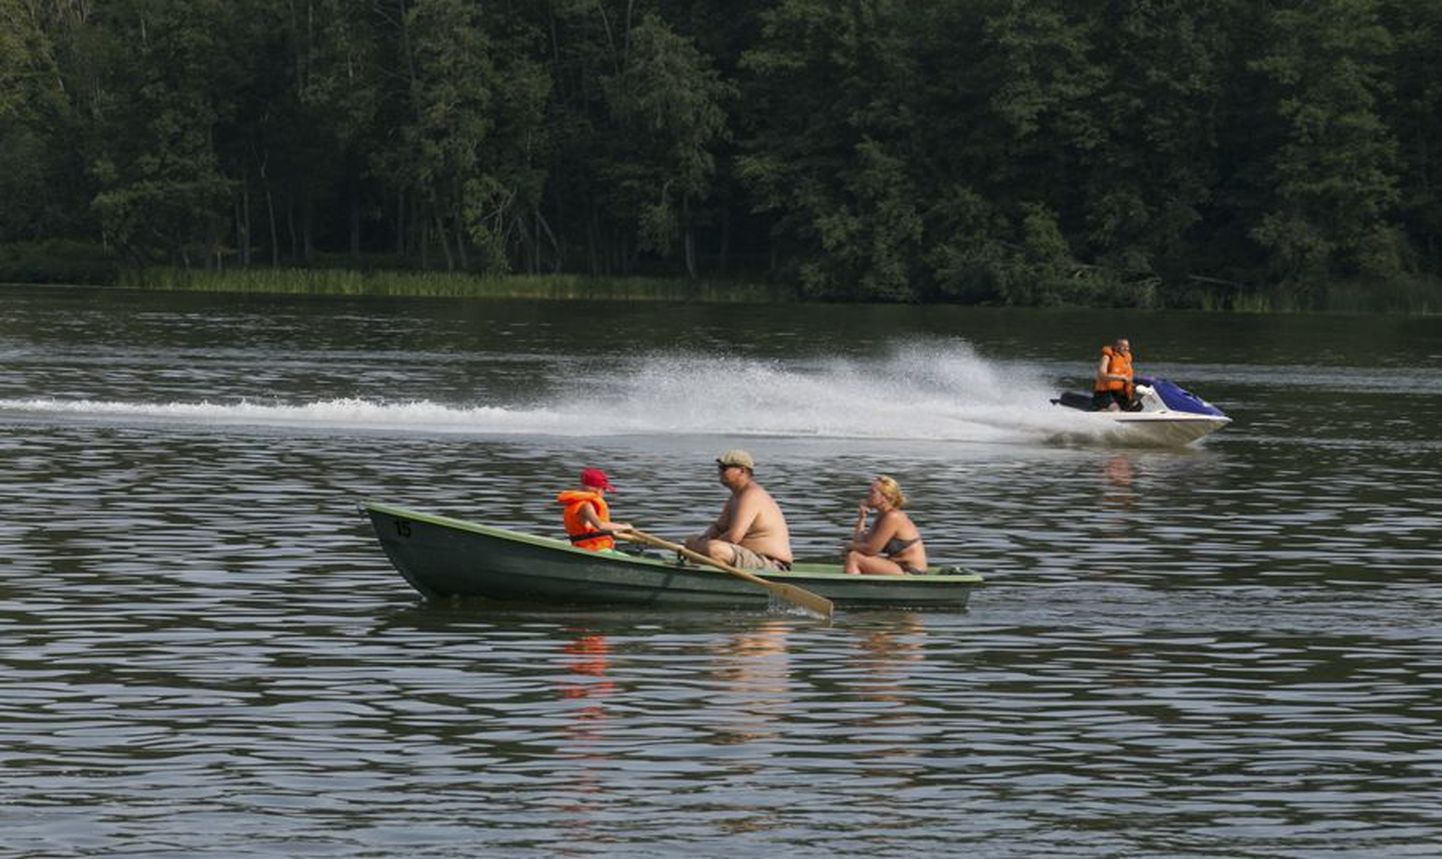 Praegu on Viljandi järv kondijõul liikuvatele paatidele ja jettidele võrdväärselt avatud.